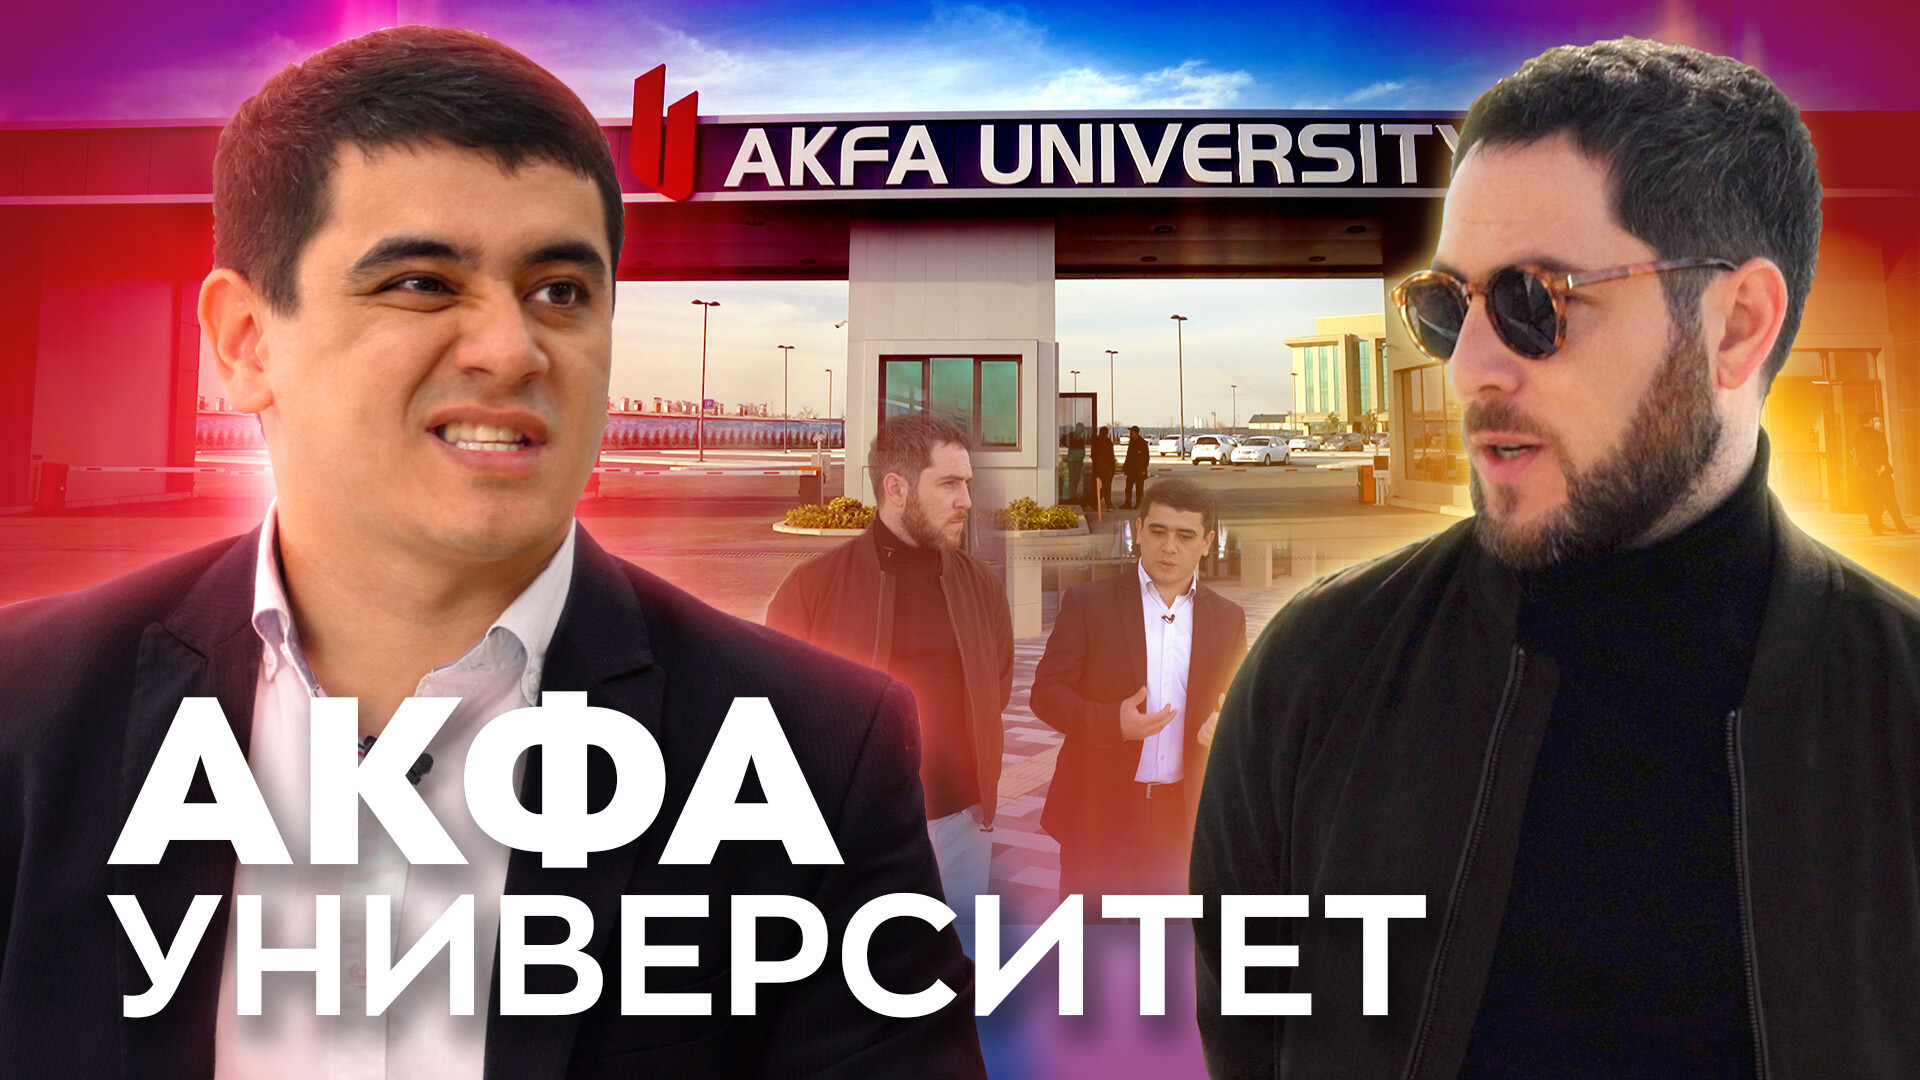 «Все, что вы хотели знать про AKFA Университет» – видеоинтервью с ректором вуза